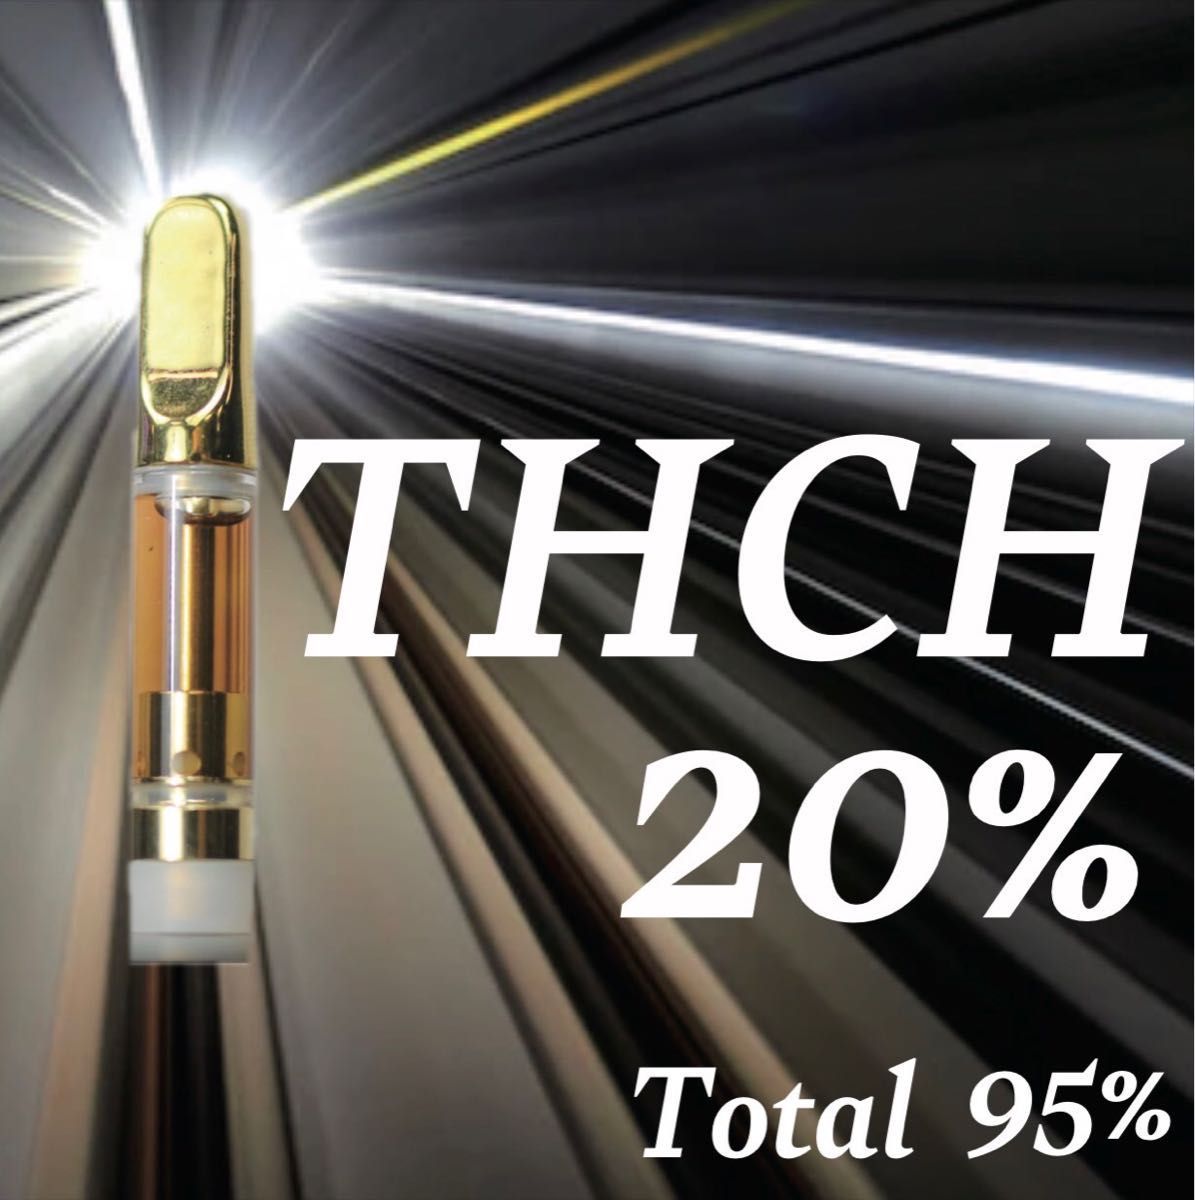 THCH20% CRD70% 1ml THCH高濃度リキッド トータル93% THCH｜PayPayフリマ